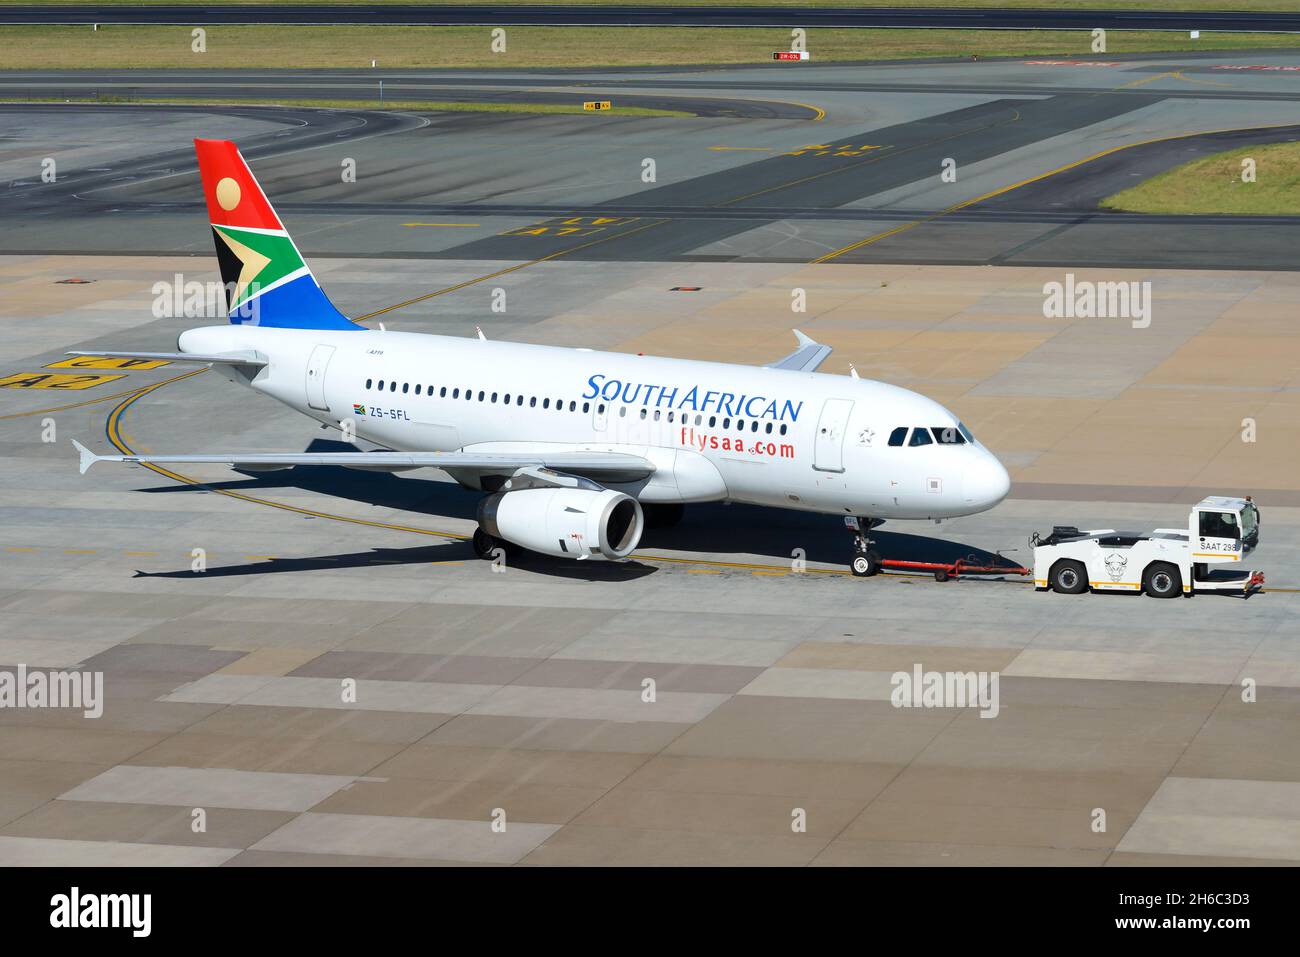 Avion Airbus A319 de South African Airways à l'aéroport de Johannesburg OU de Tambo.Avion A319 de SAA après avoir relancé ses opérations. Banque D'Images